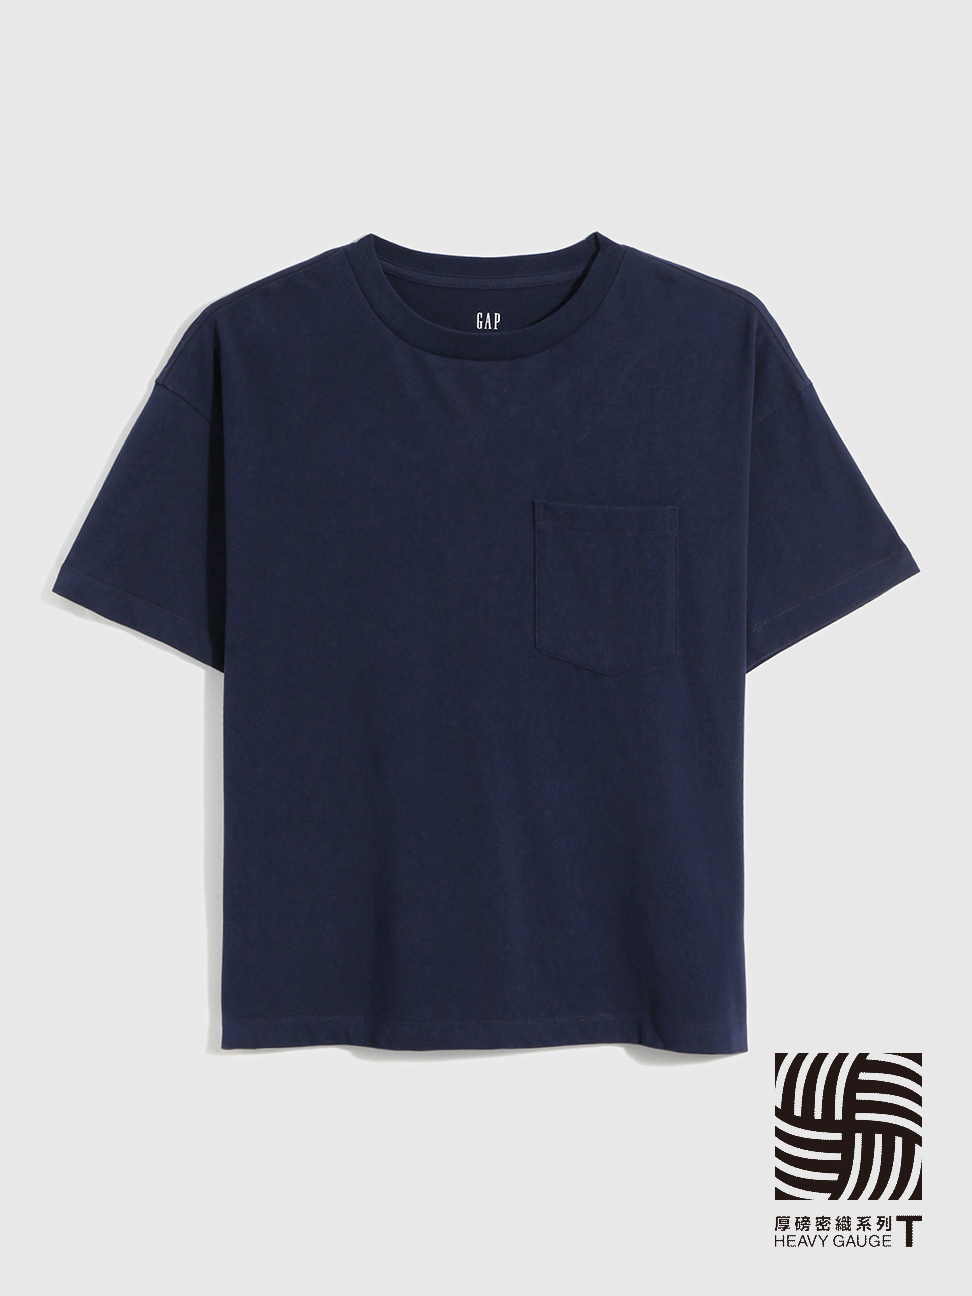 女裝|條紋/素色短袖T恤-海軍藍